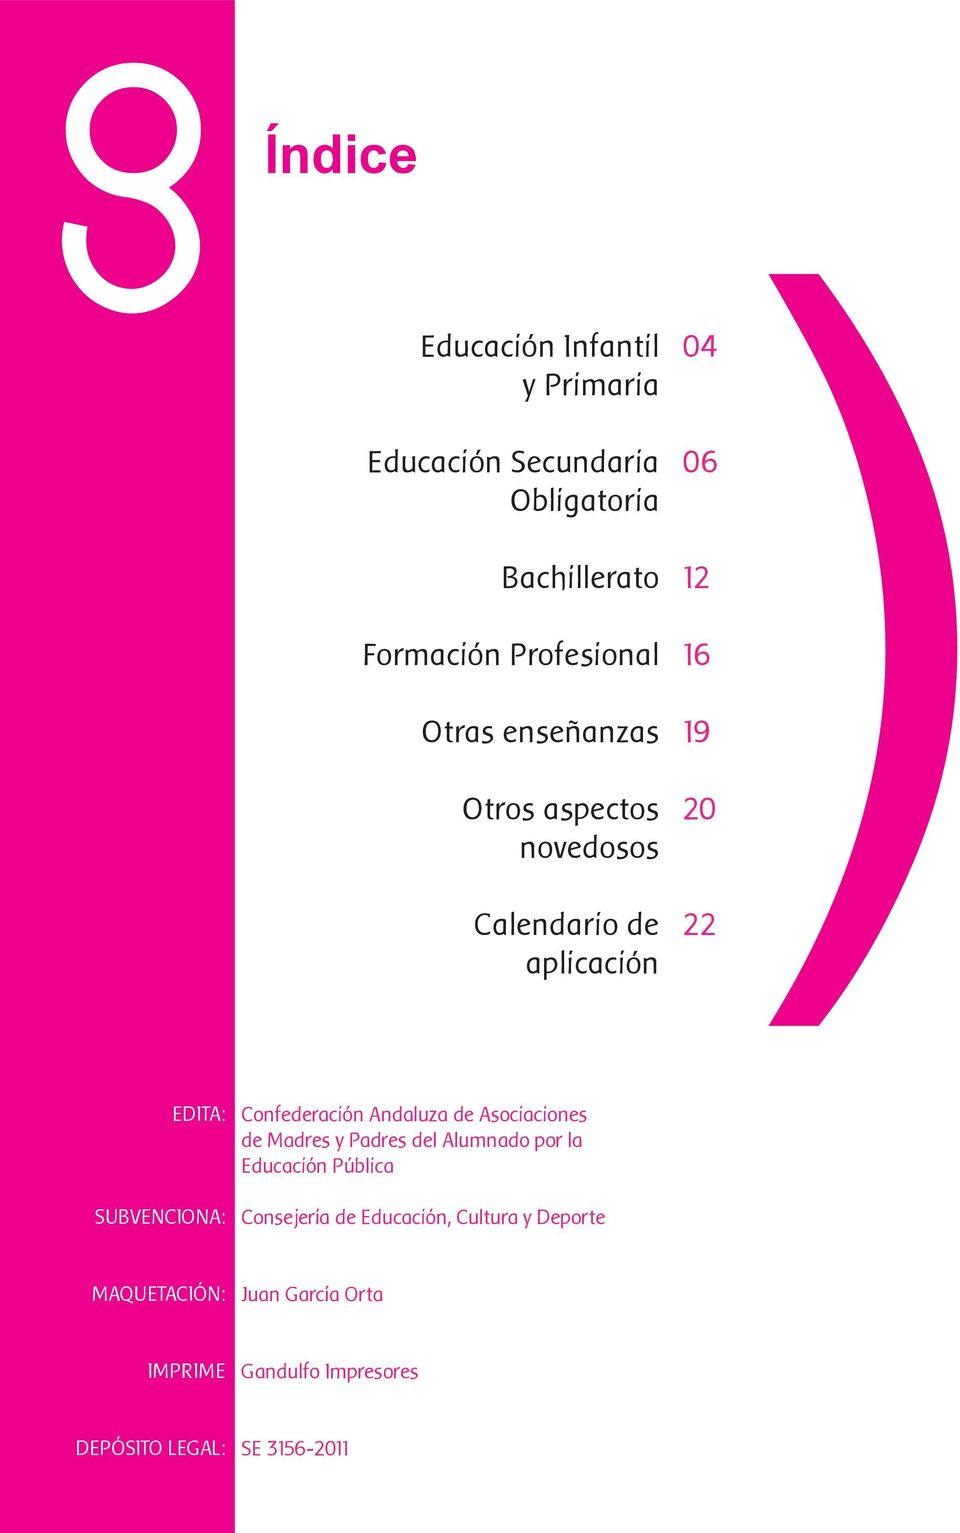 Confederación Andaluza de Asociaciones de Madres y Padres del Alumnado por la Educación Pública Consejería de